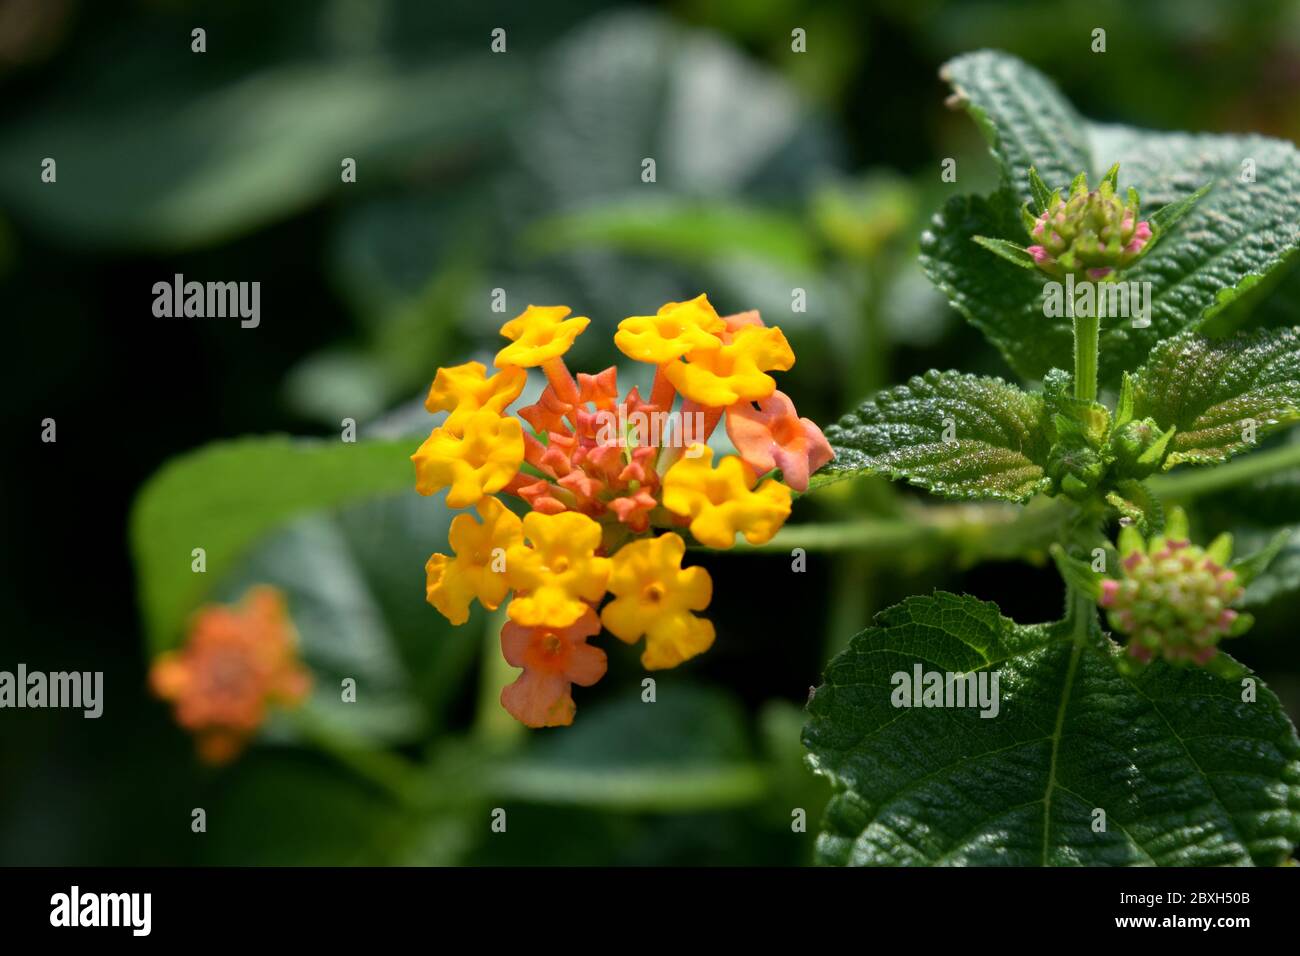 Yellow Lantana camara flowers in the nature Stock Photo